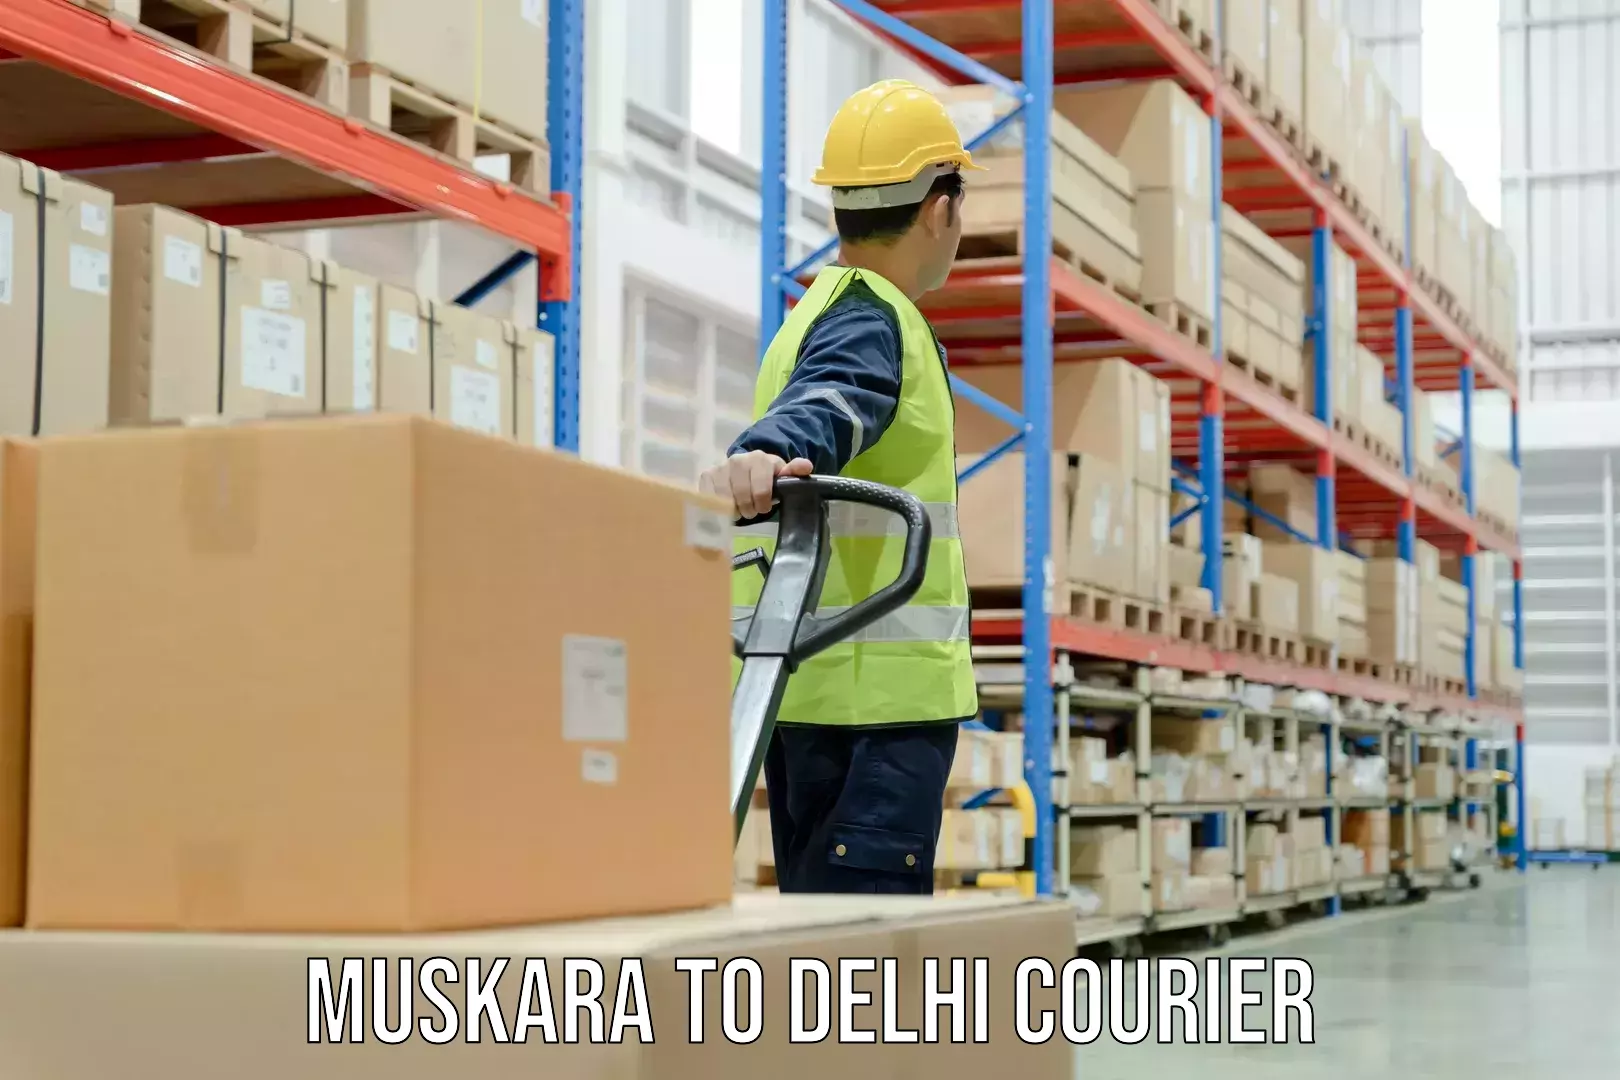 Courier service comparison Muskara to NIT Delhi